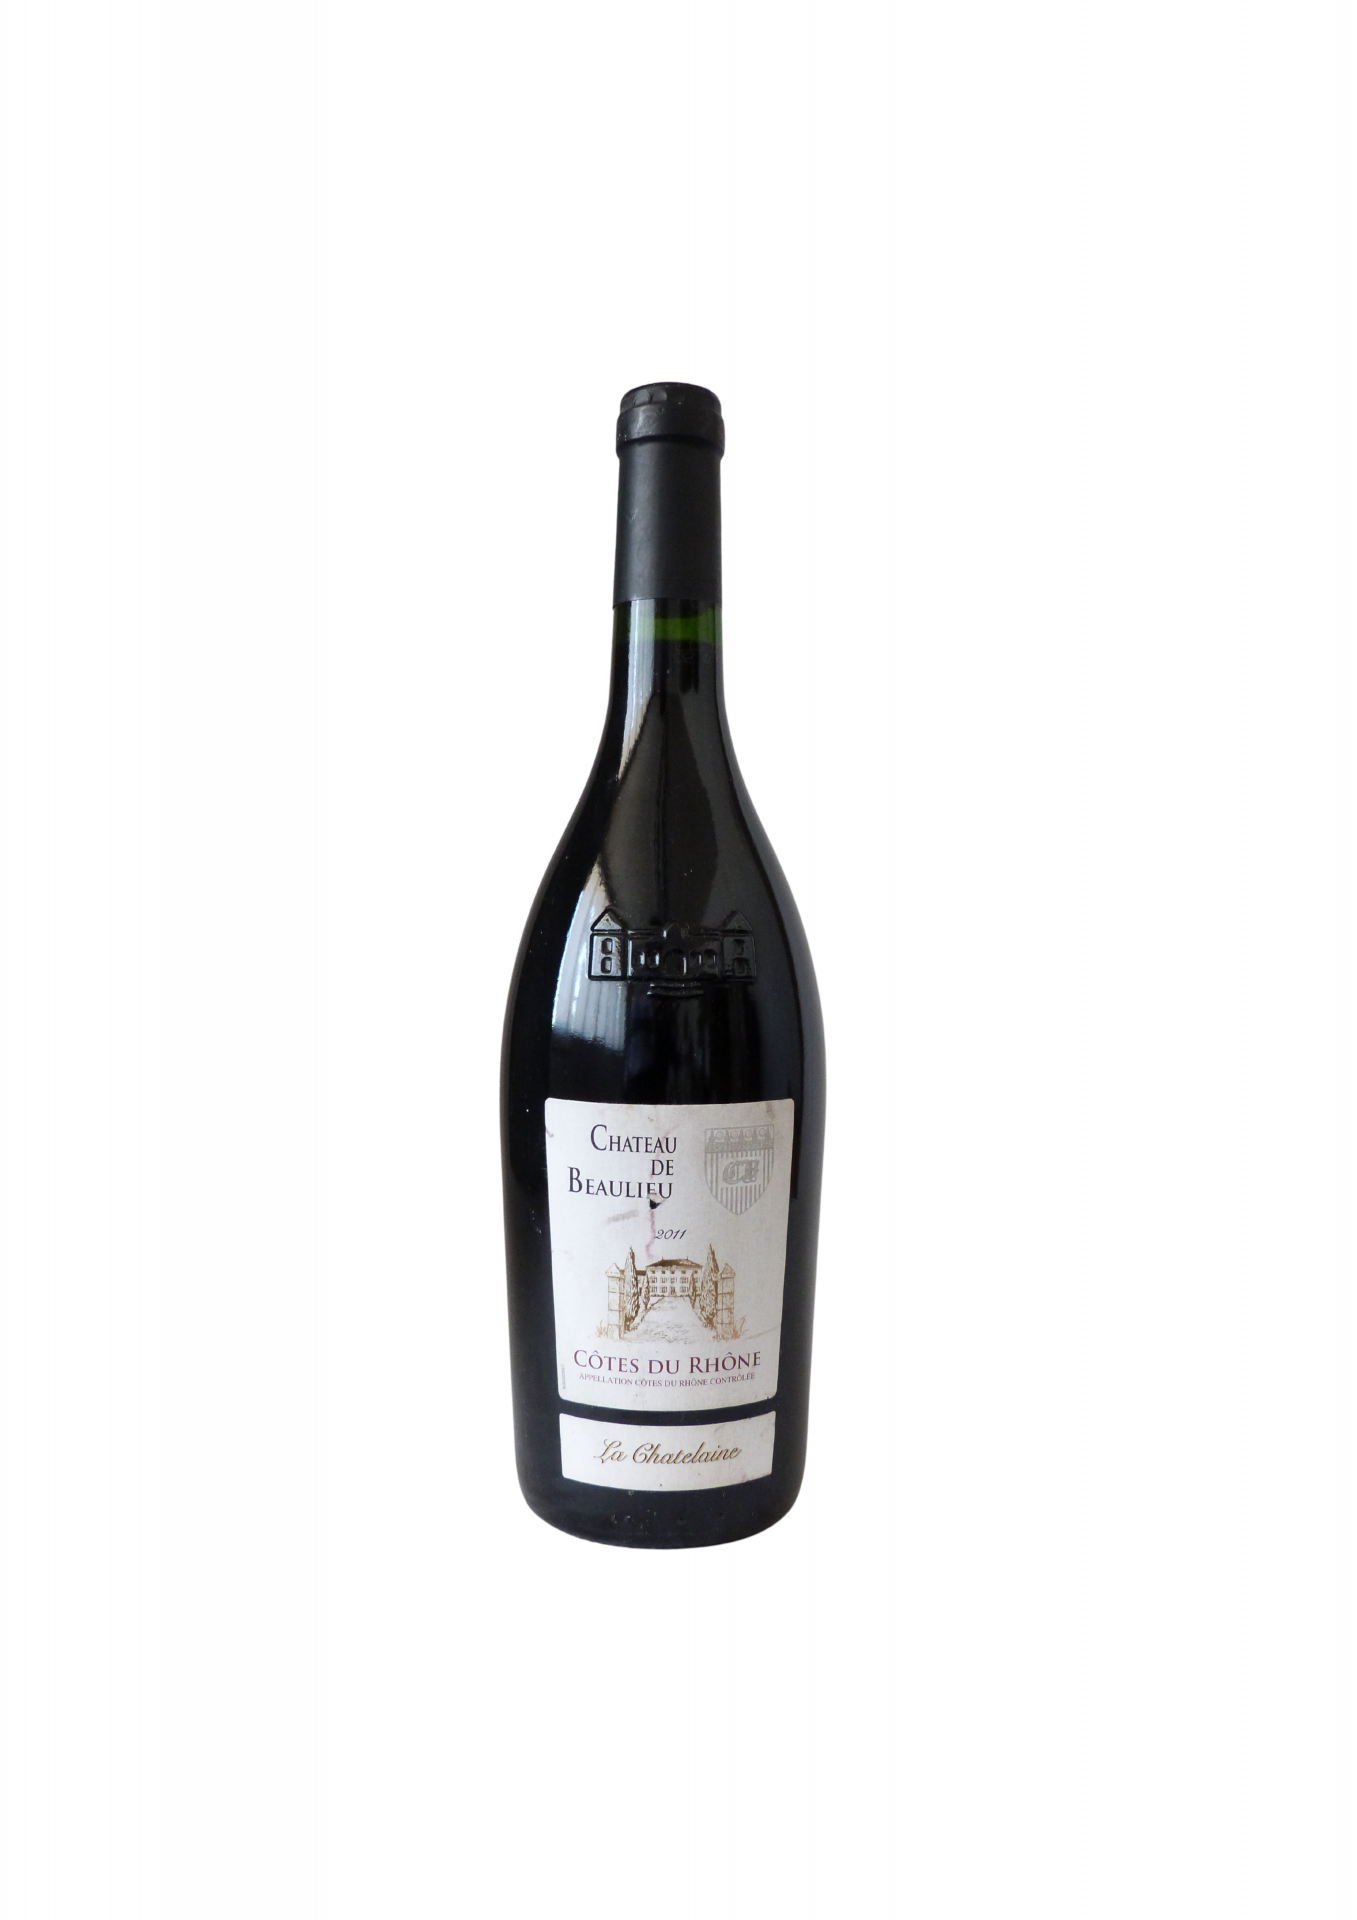 BOUZERON - Grand vin blanc de Bourgogne - Cave de Bissey